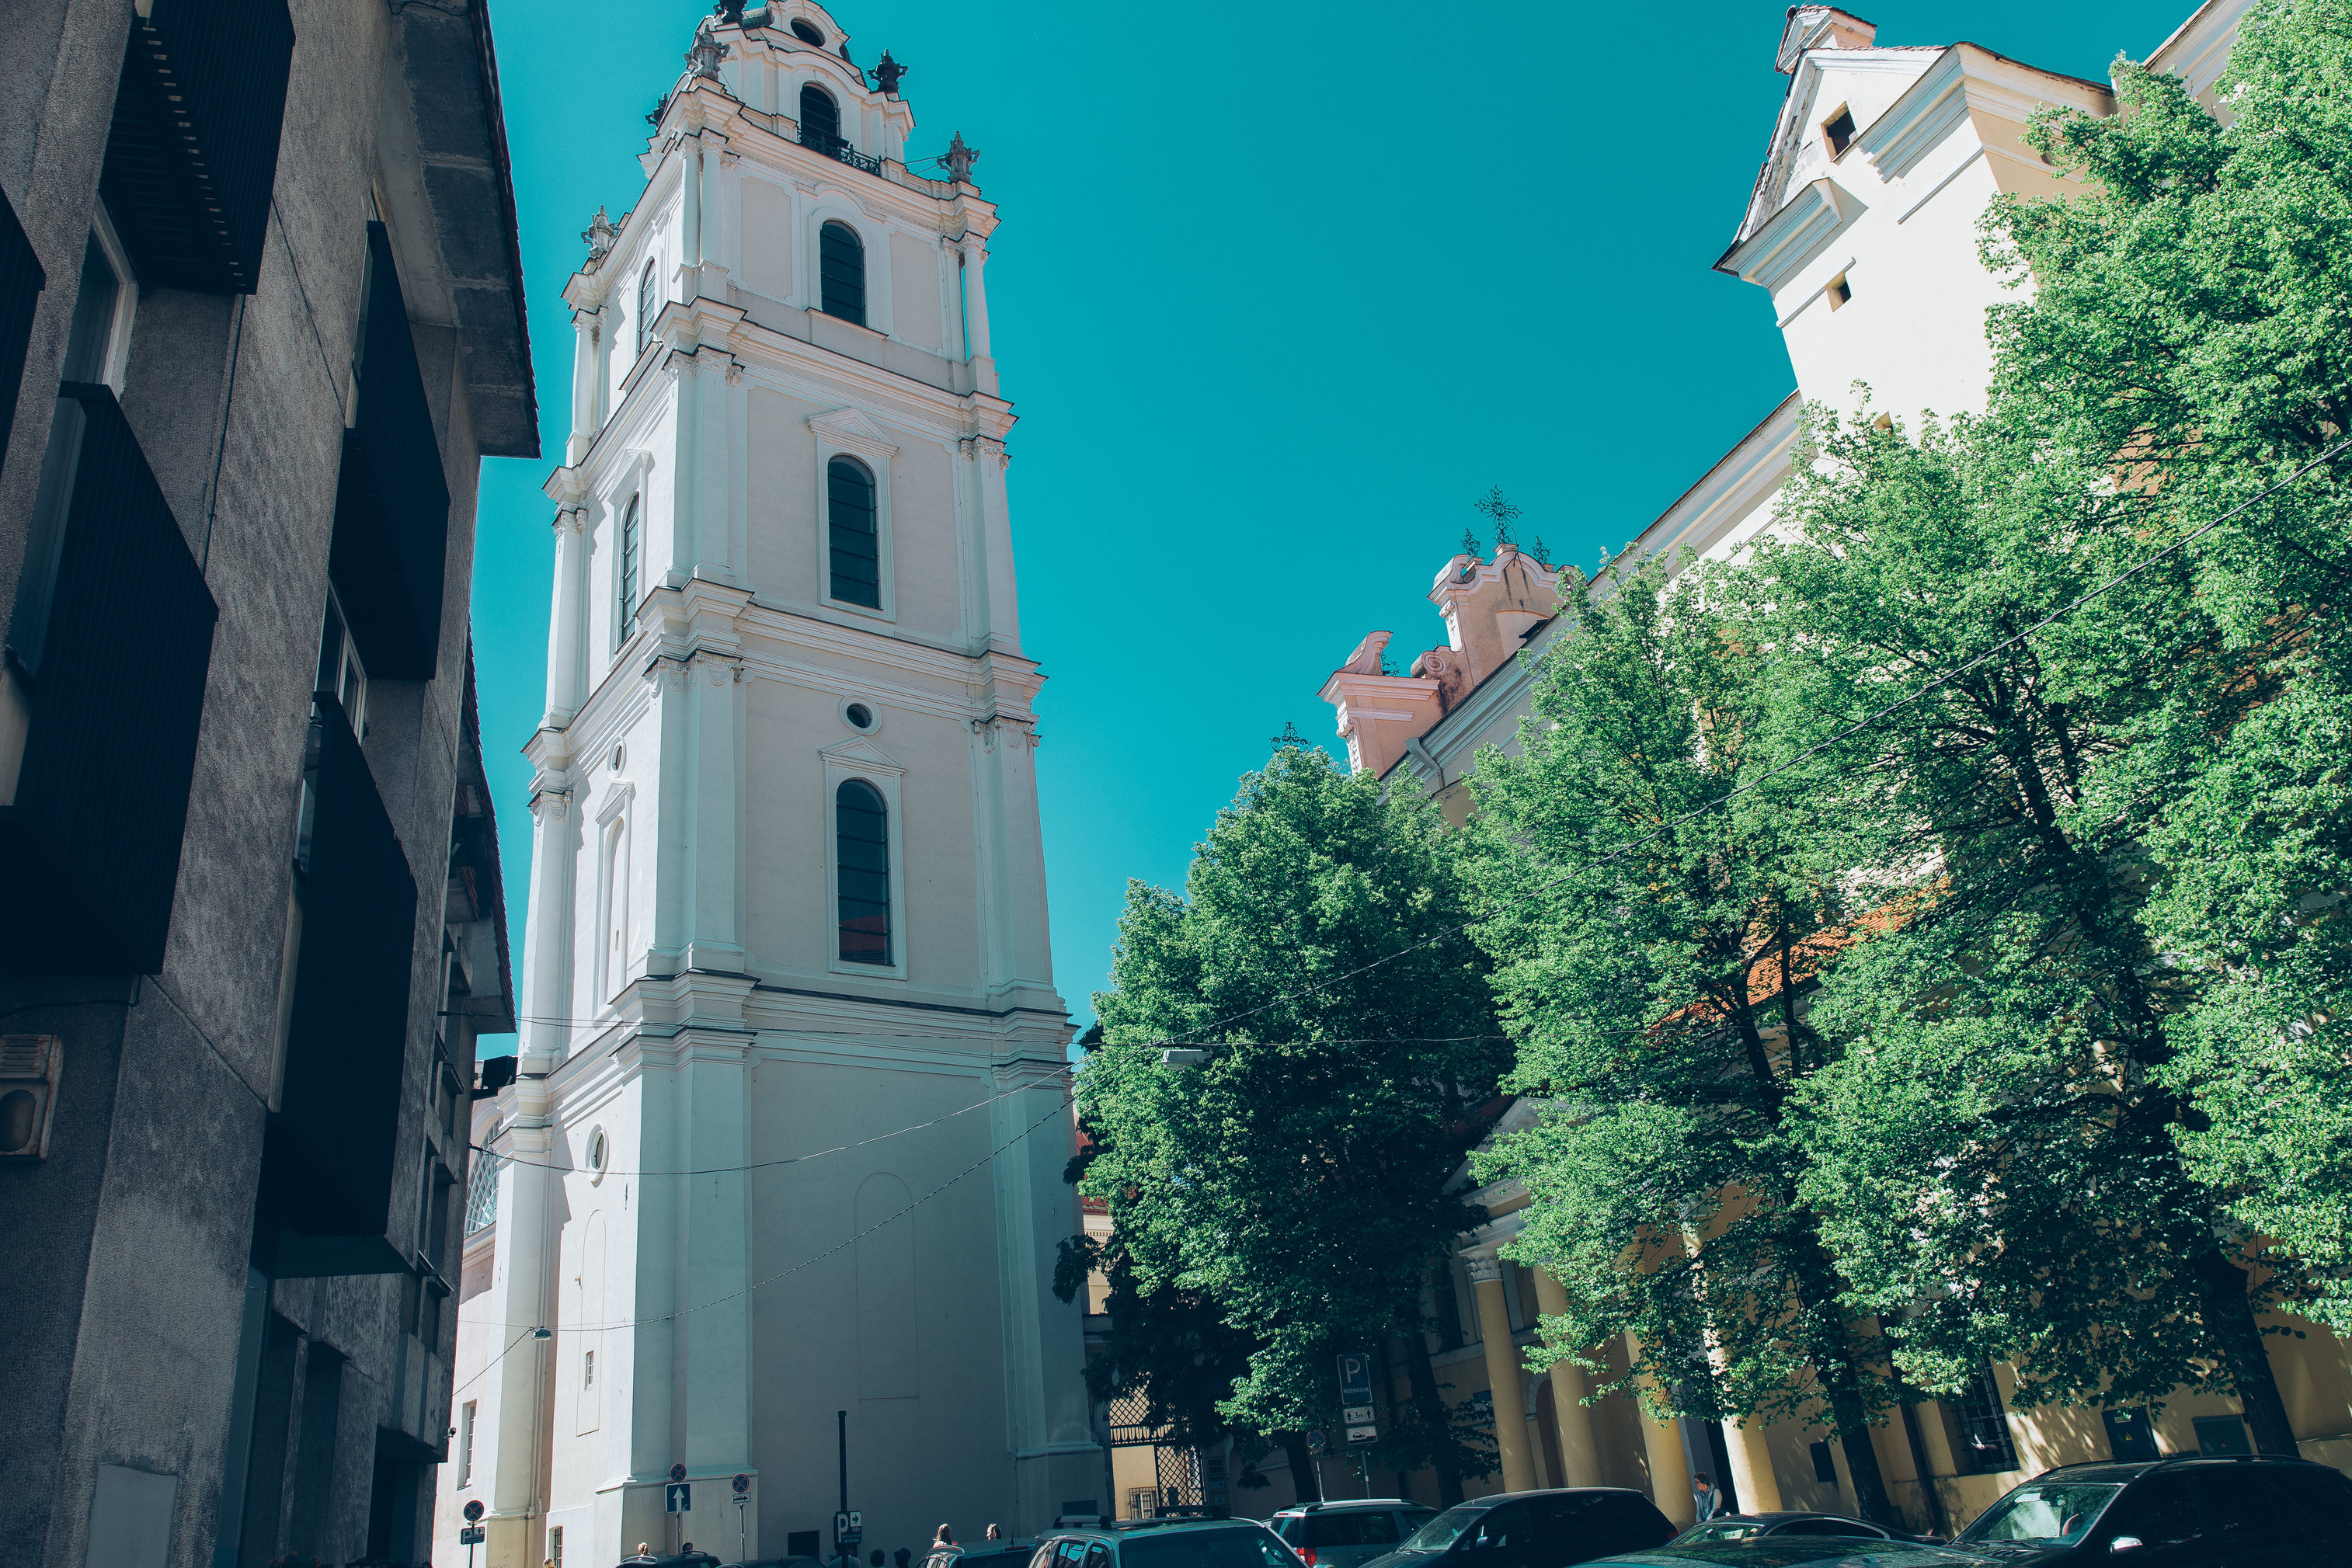 Johns' Church Bell Tower in Vilnius